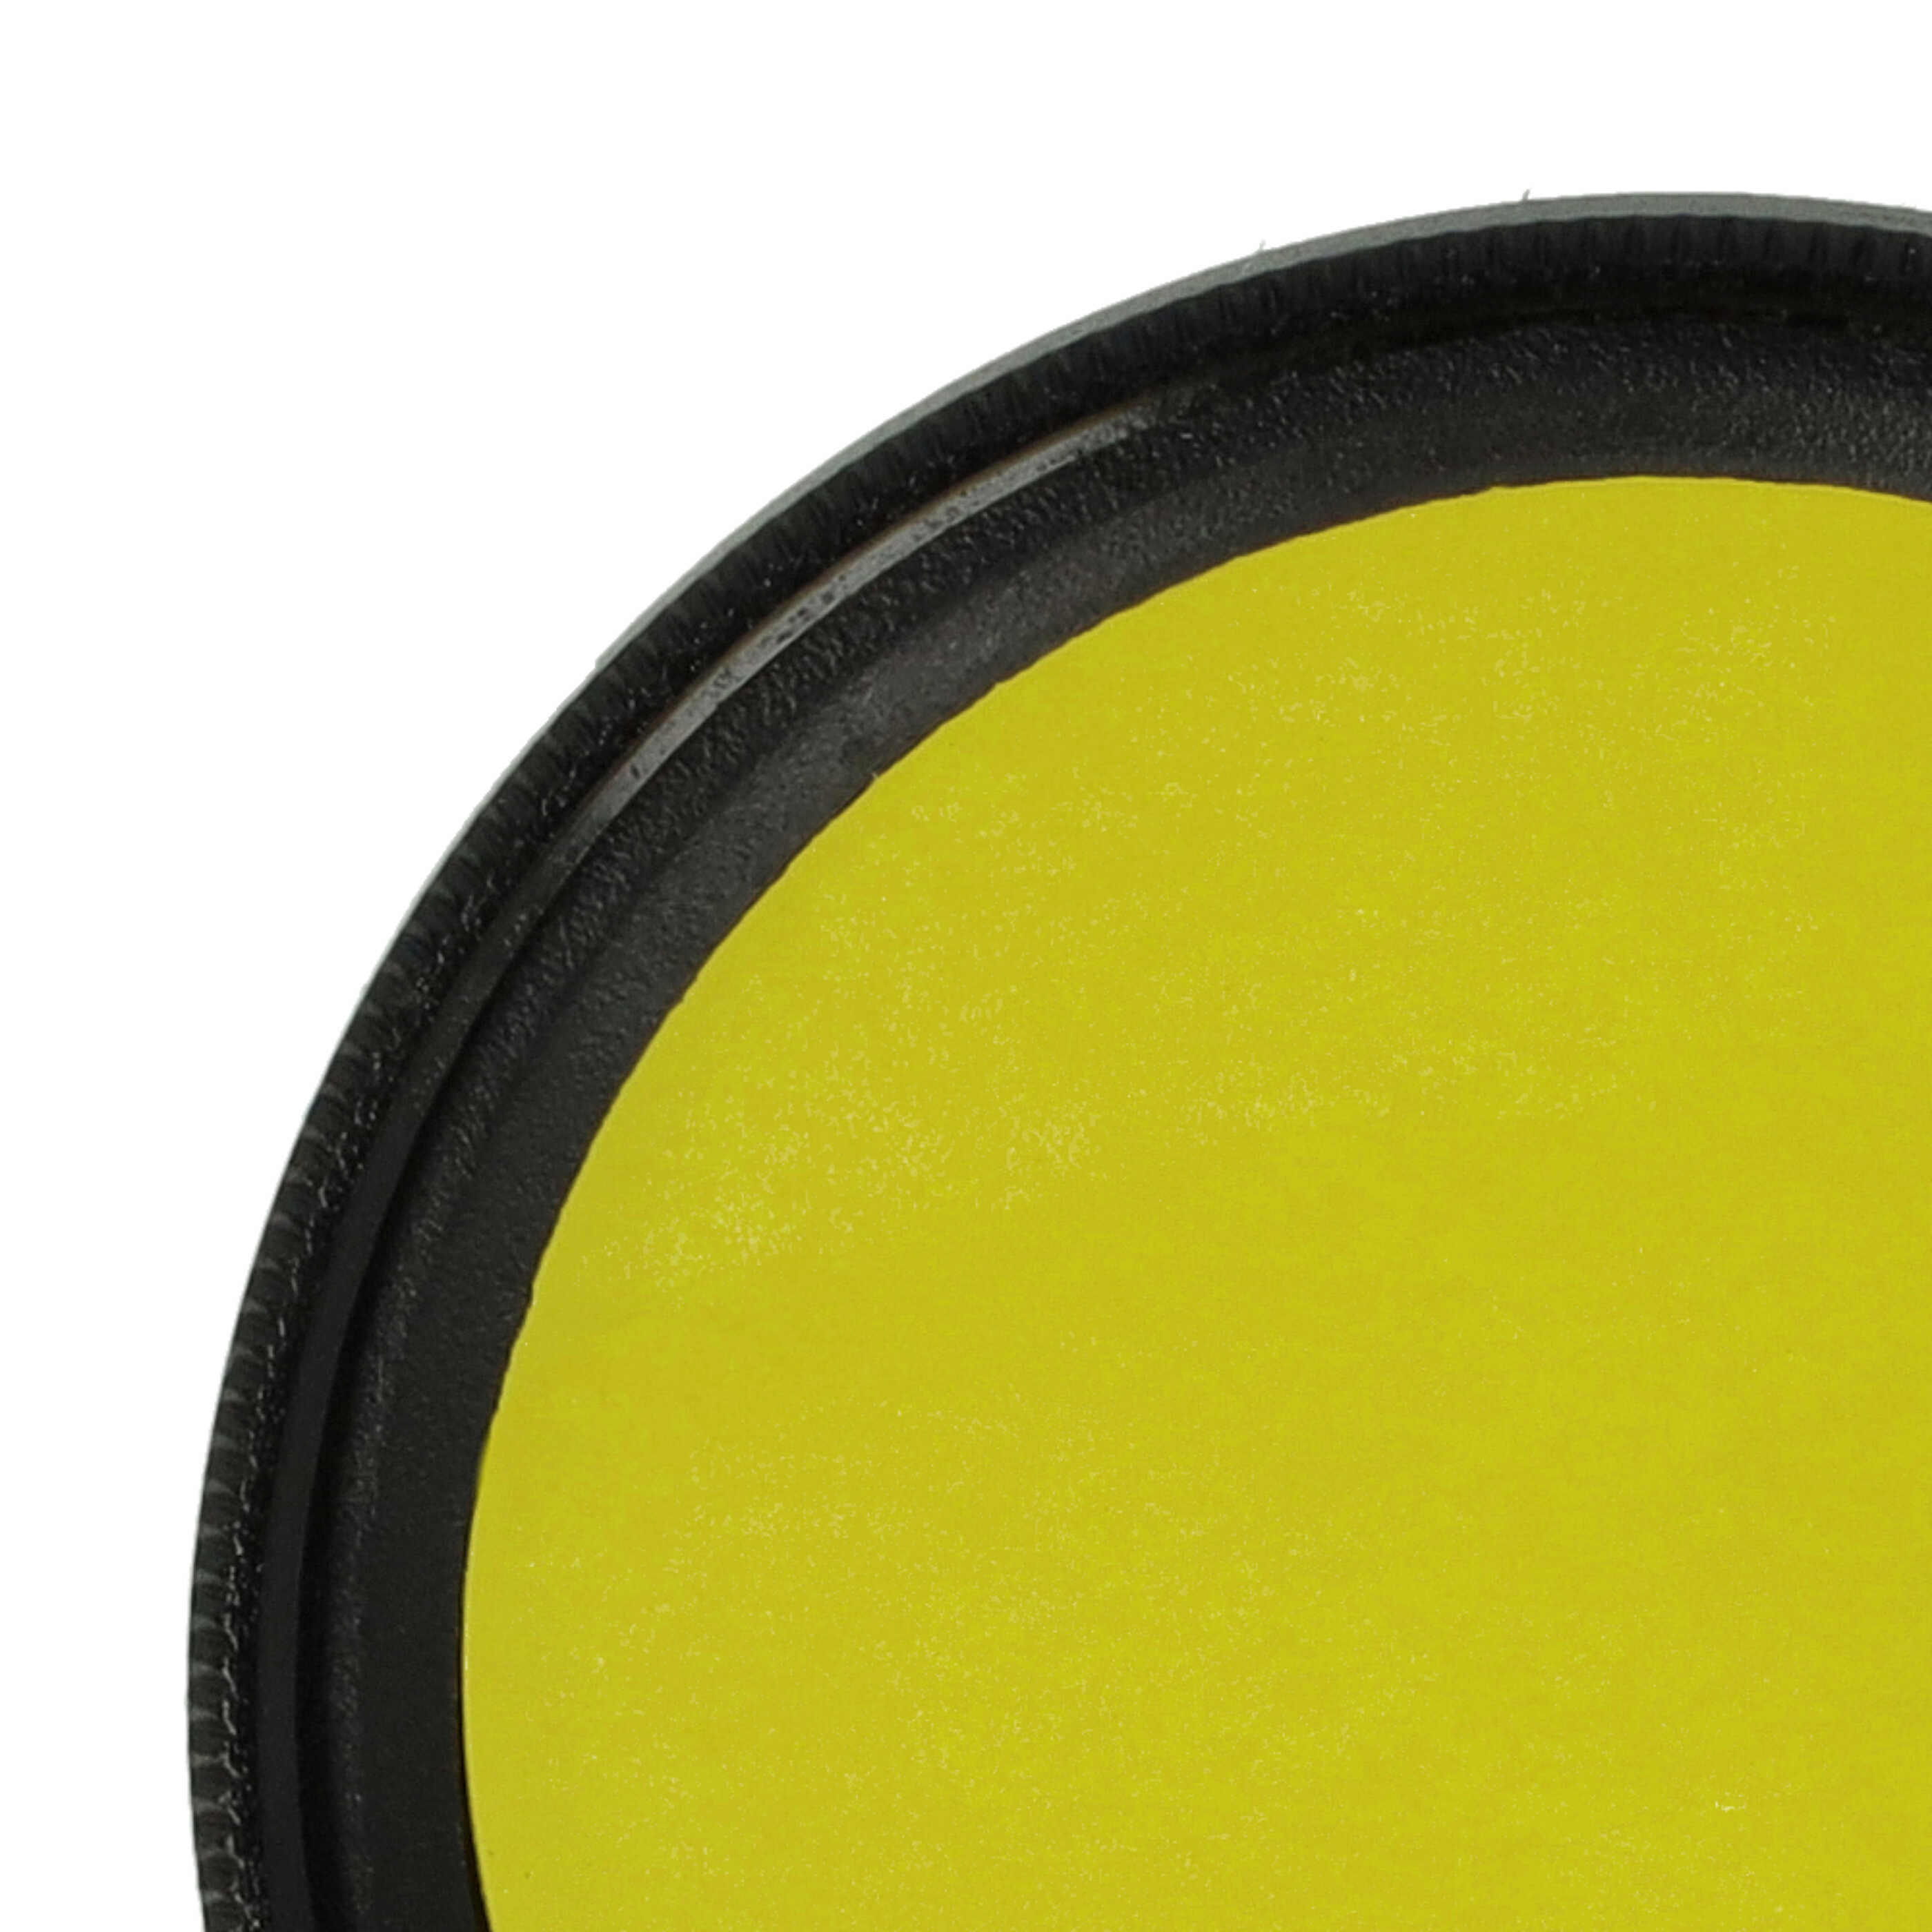 Filtr fotograficzny na obiektywy z gwintem 37 mm - filtr żółty